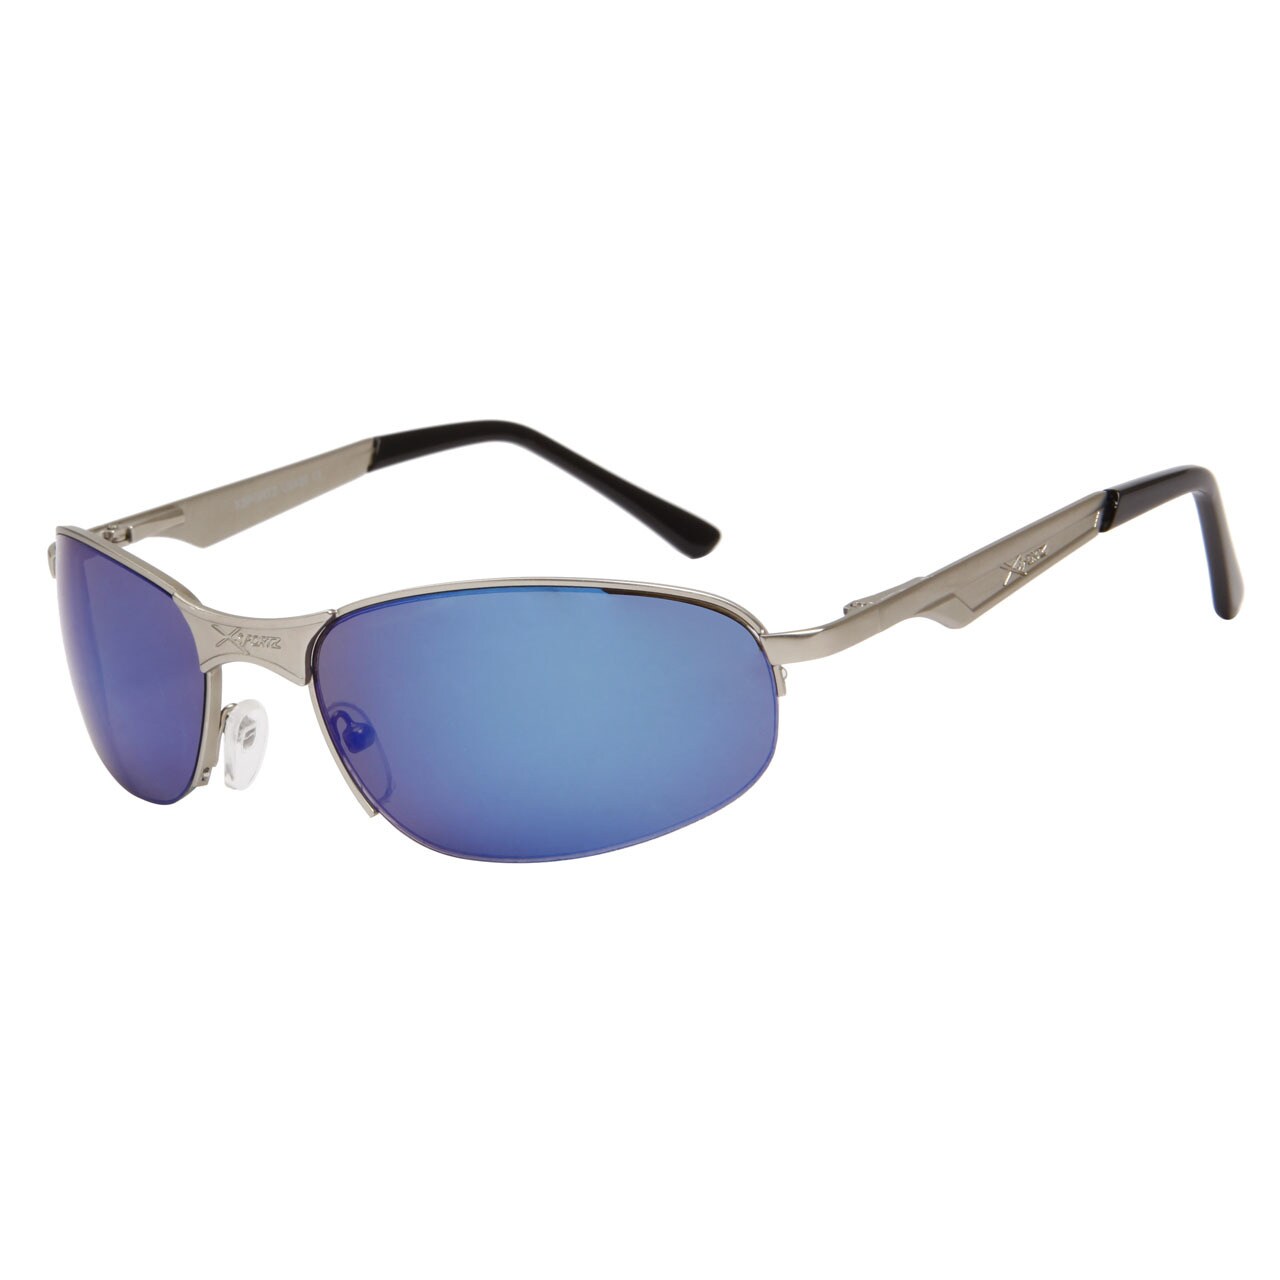 XSPORTZ Solbriller -  Mørkeblått glass og sølvinnfatning